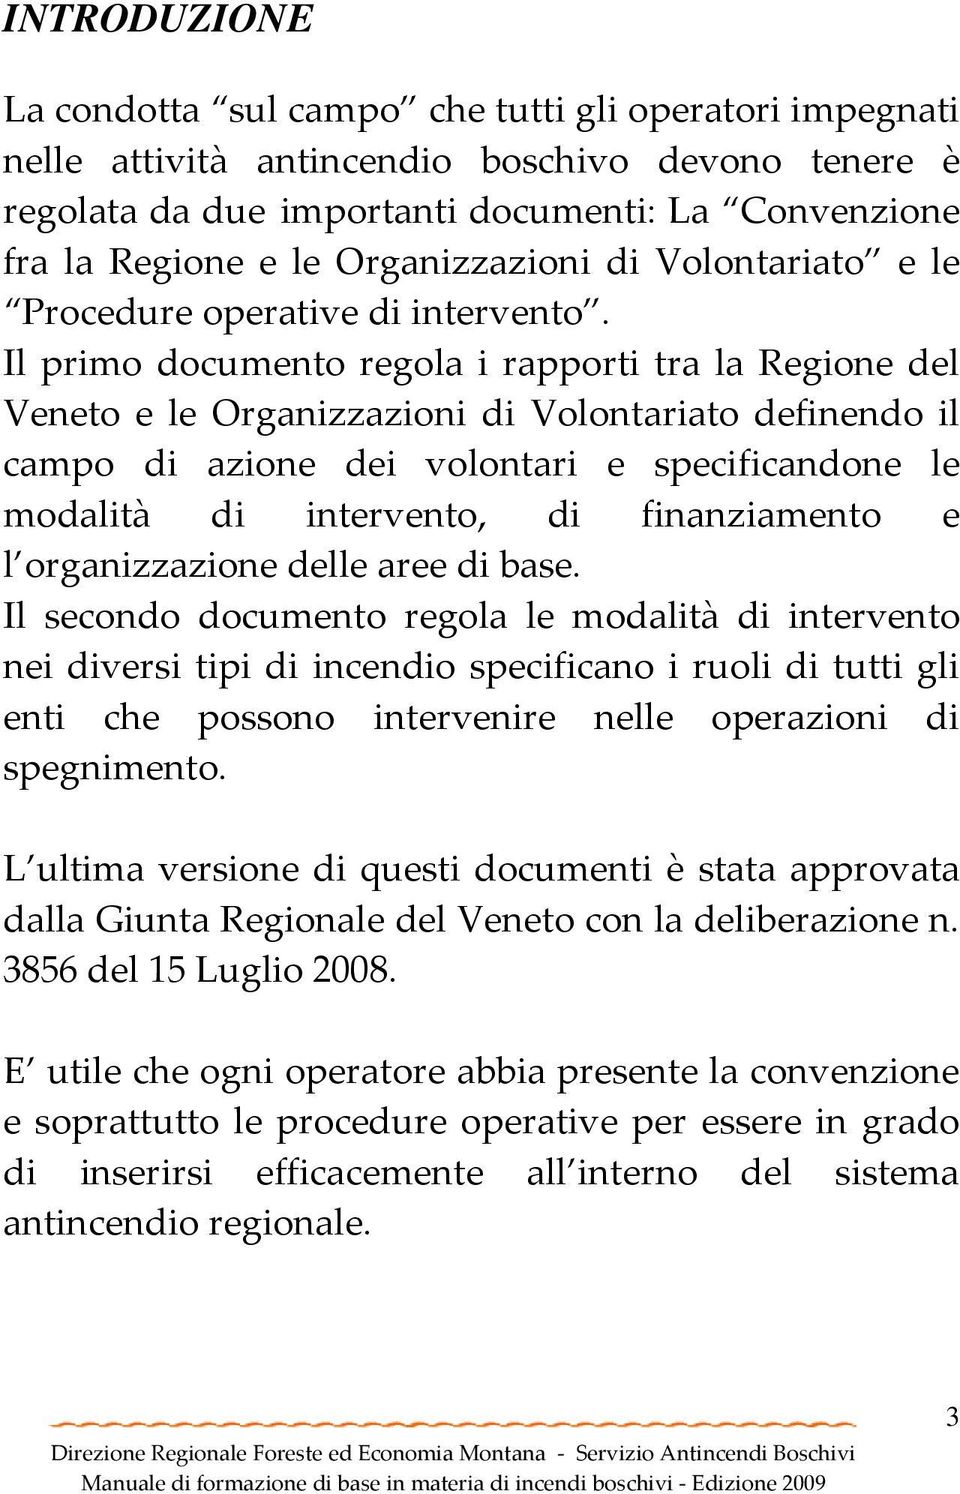 Il primo documento regola i rapporti tra la Regione del Veneto e le Organizzazioni di Volontariato definendo il campo di azione dei volontari e specificandone le modalità di intervento, di